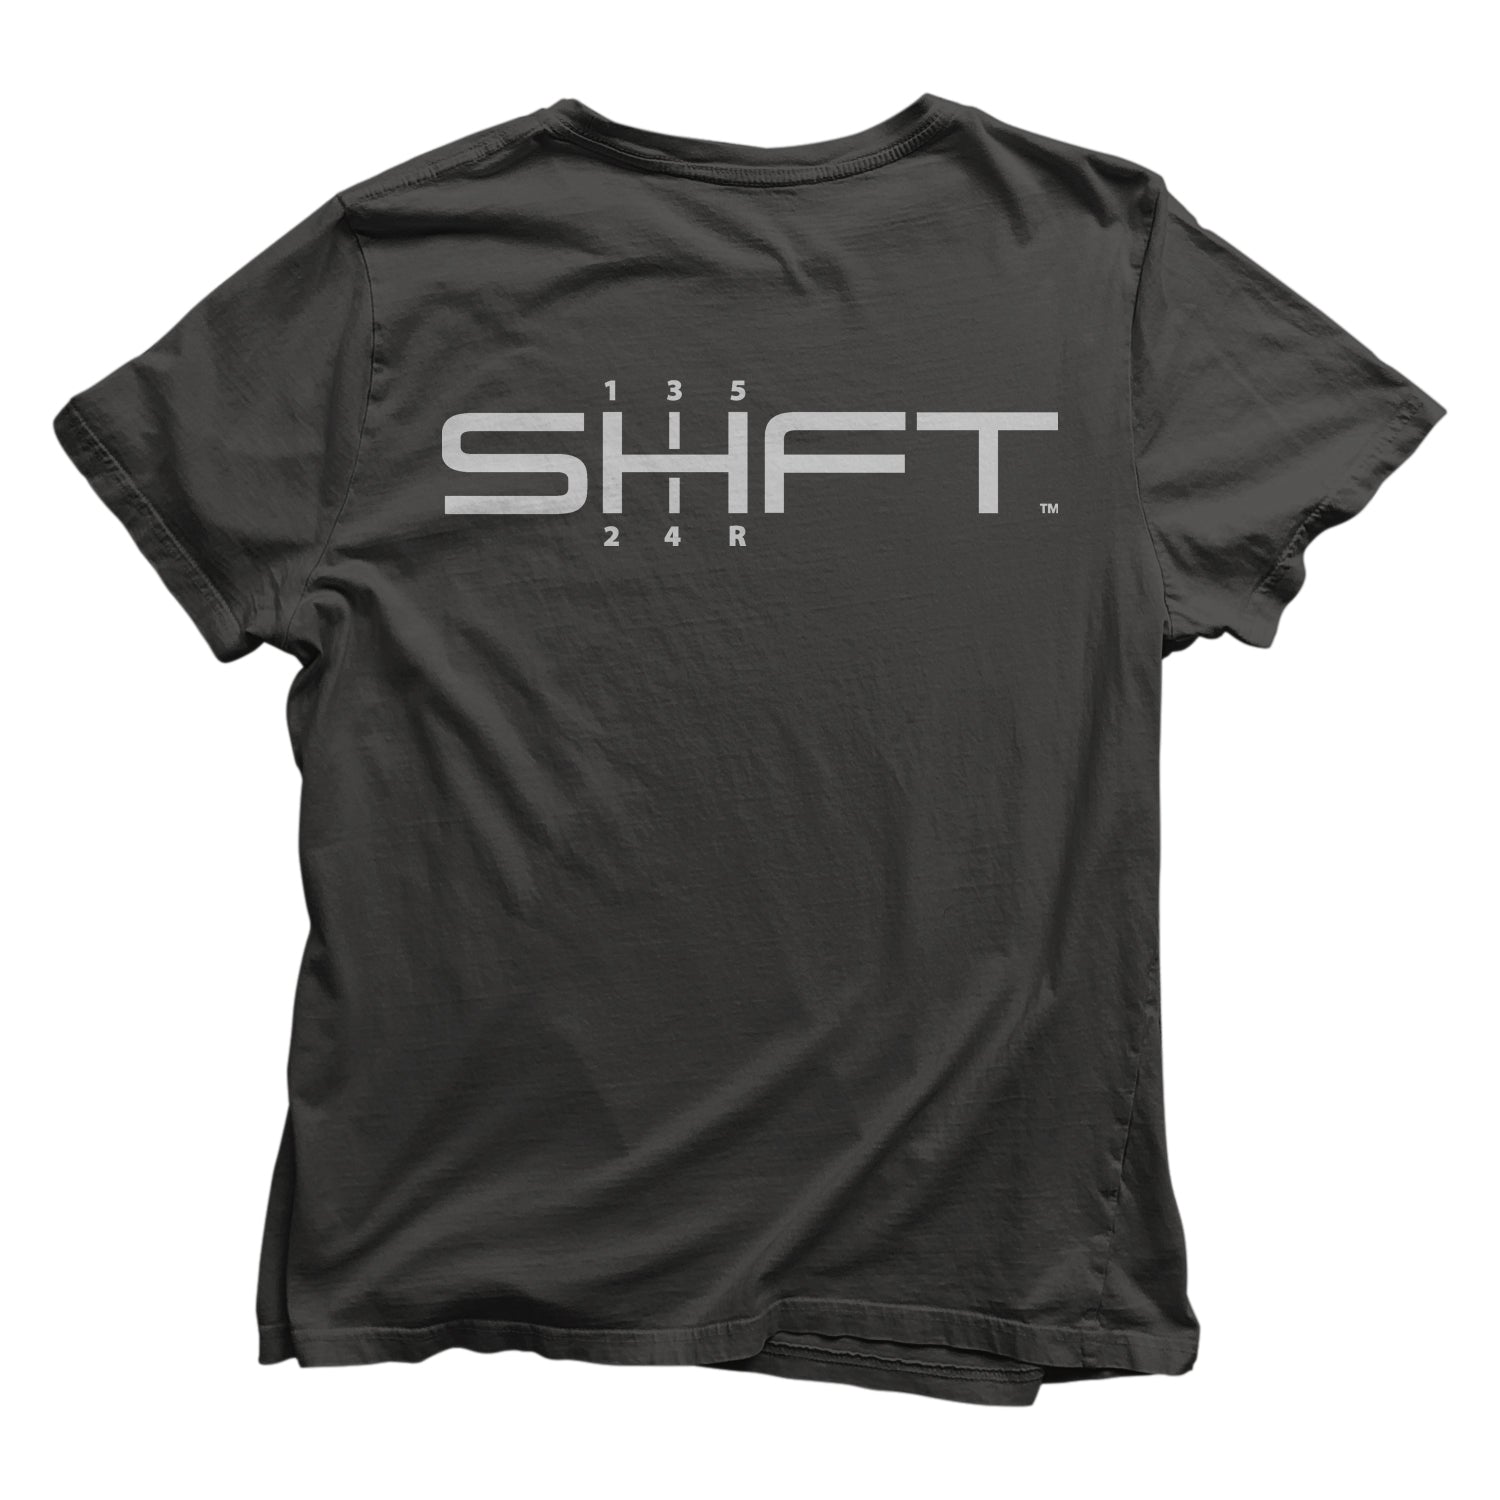 SHINE AND SHIELD – SHFT Auto Care